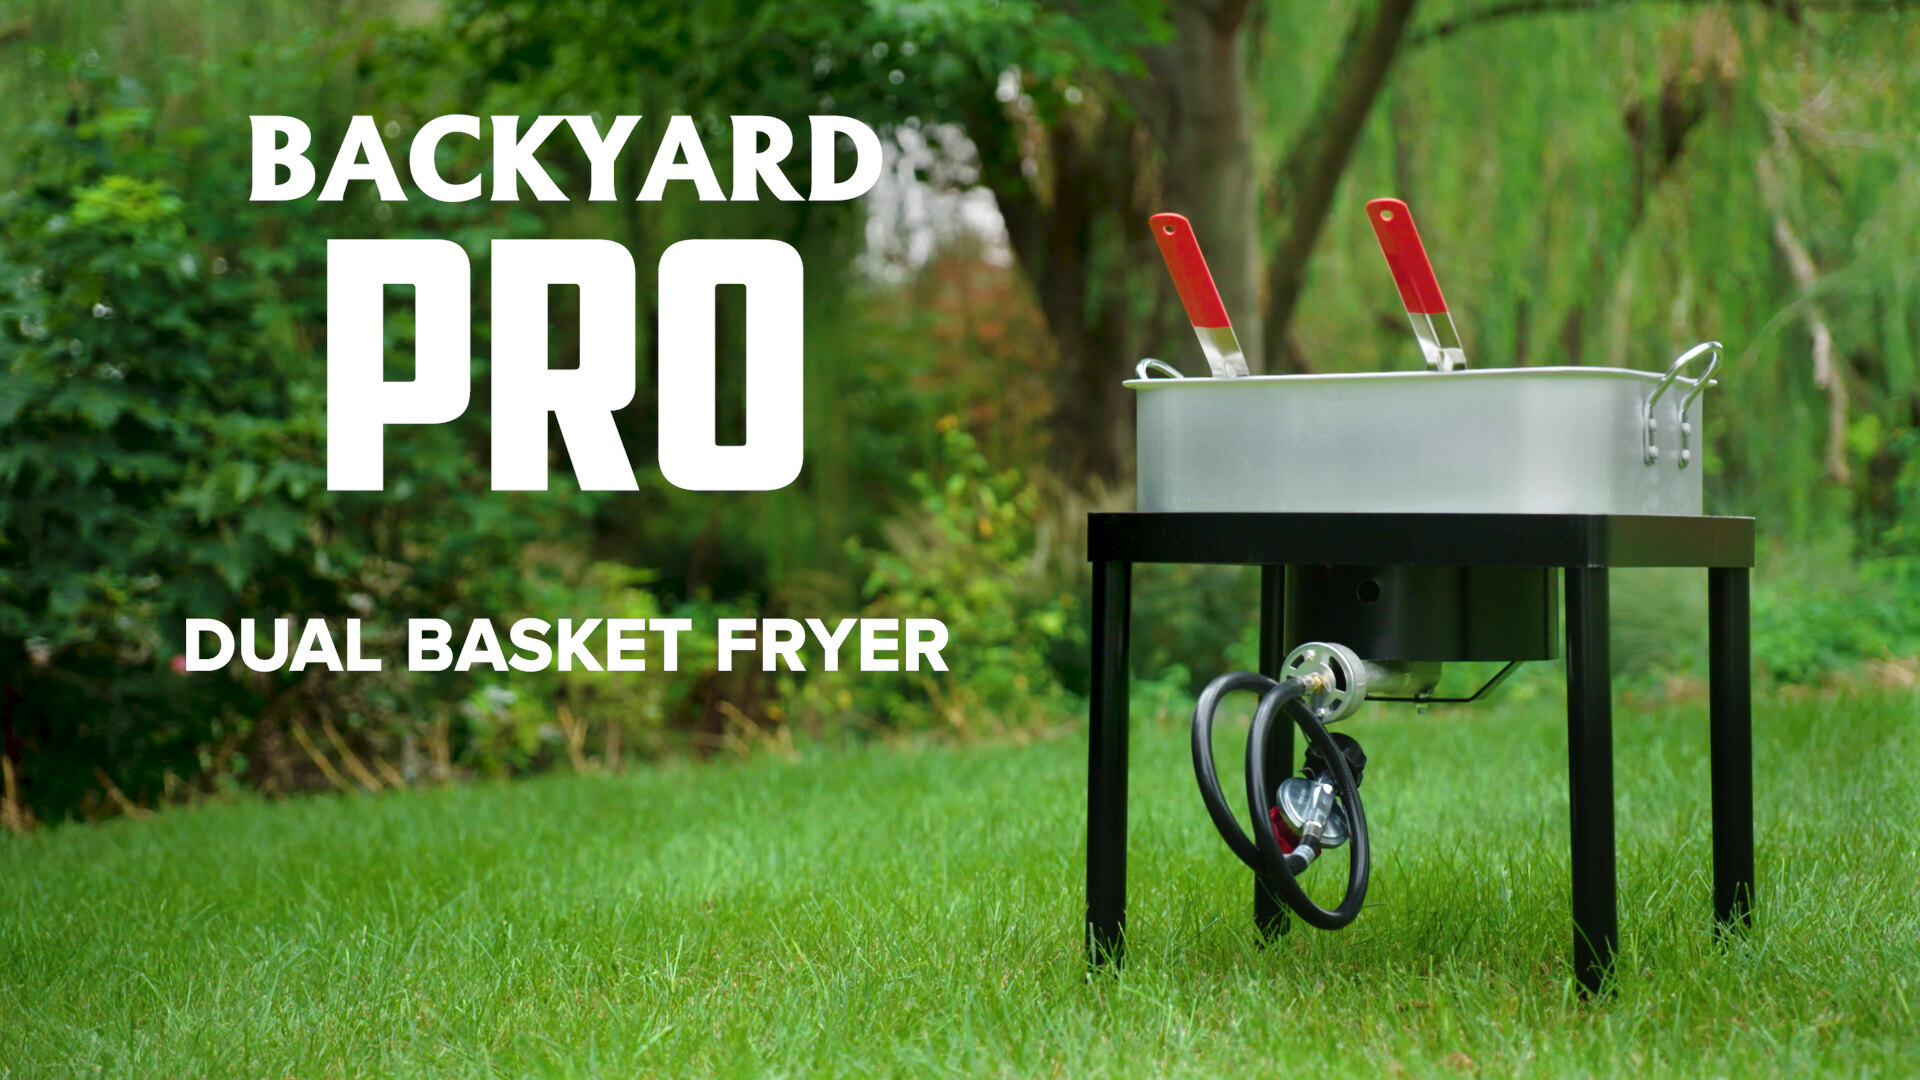 Backyard Pro 18 Qt. Dual Basket Fryer Video